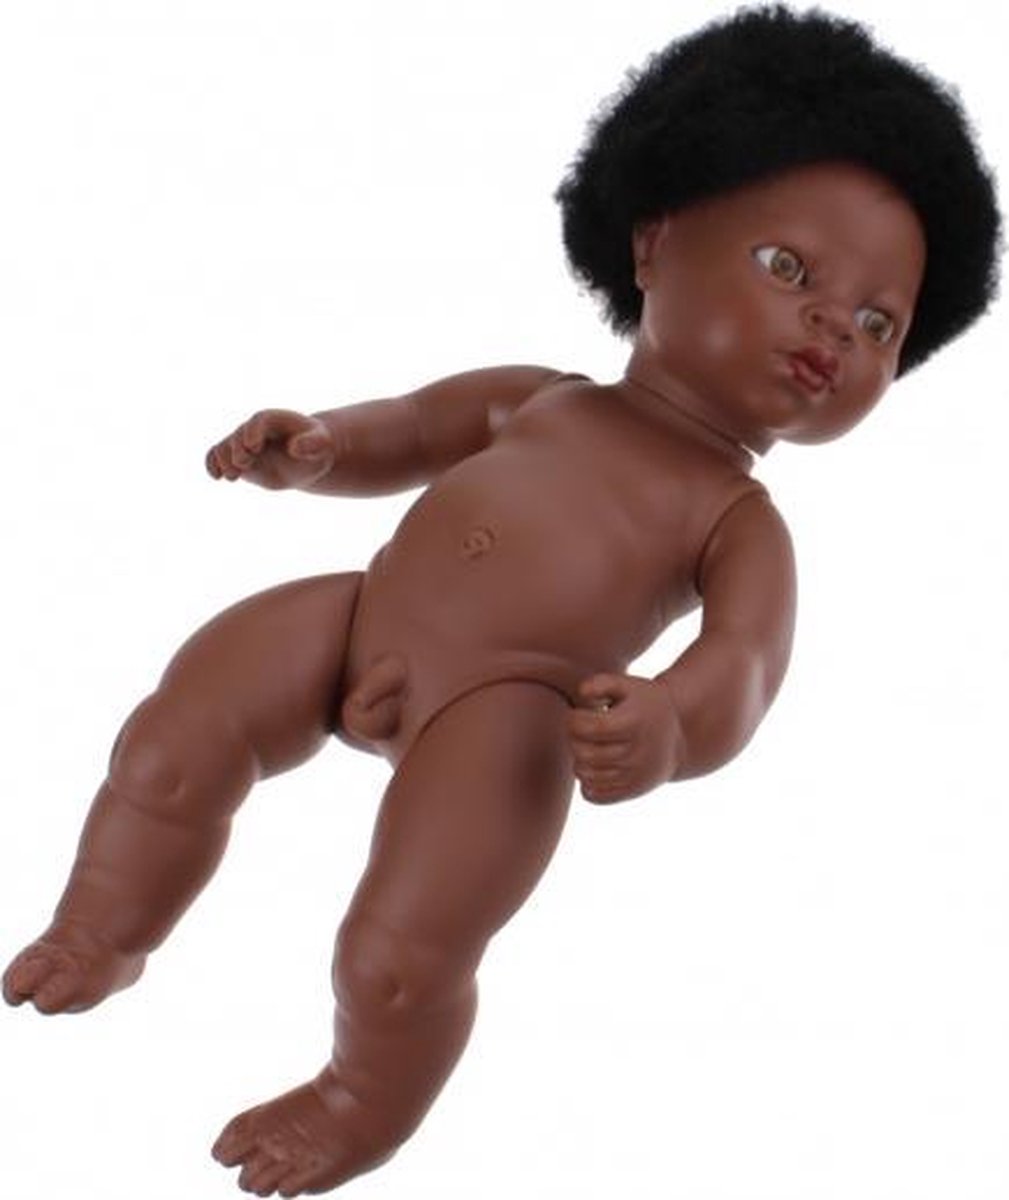 babypop zonder kleren Newborn Afrikaans 38 cm jongen